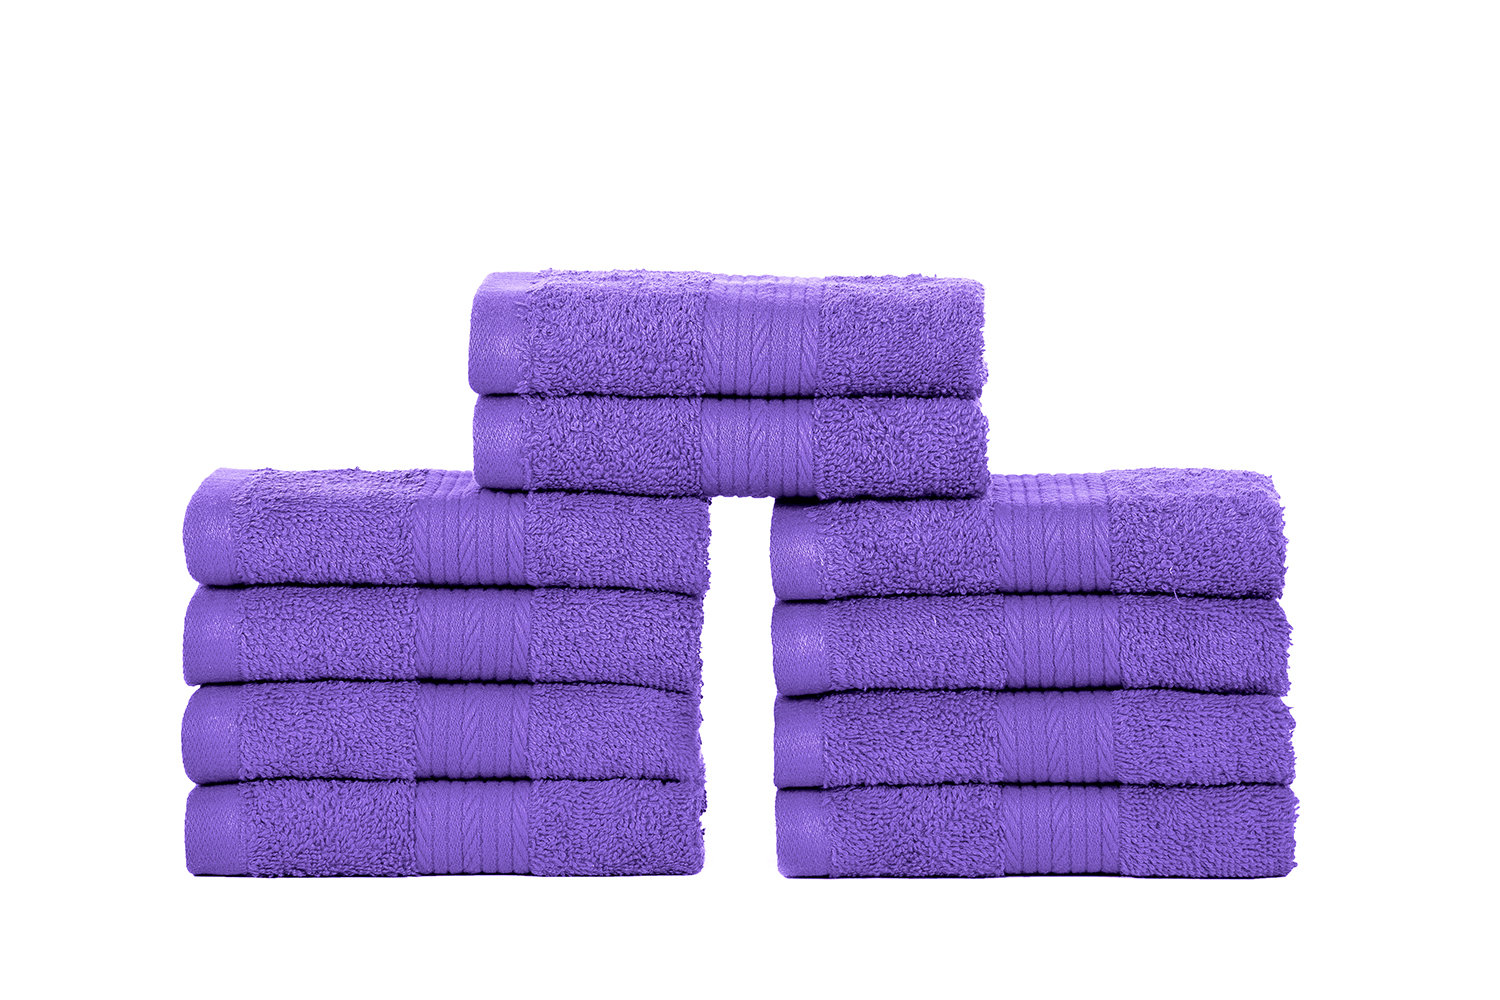 Vintage Towel, Fieldcrest Royal Velvet Purple Paisley, Bath Size, Plush  1980's Opulent Maximalist Bathroom Decor 